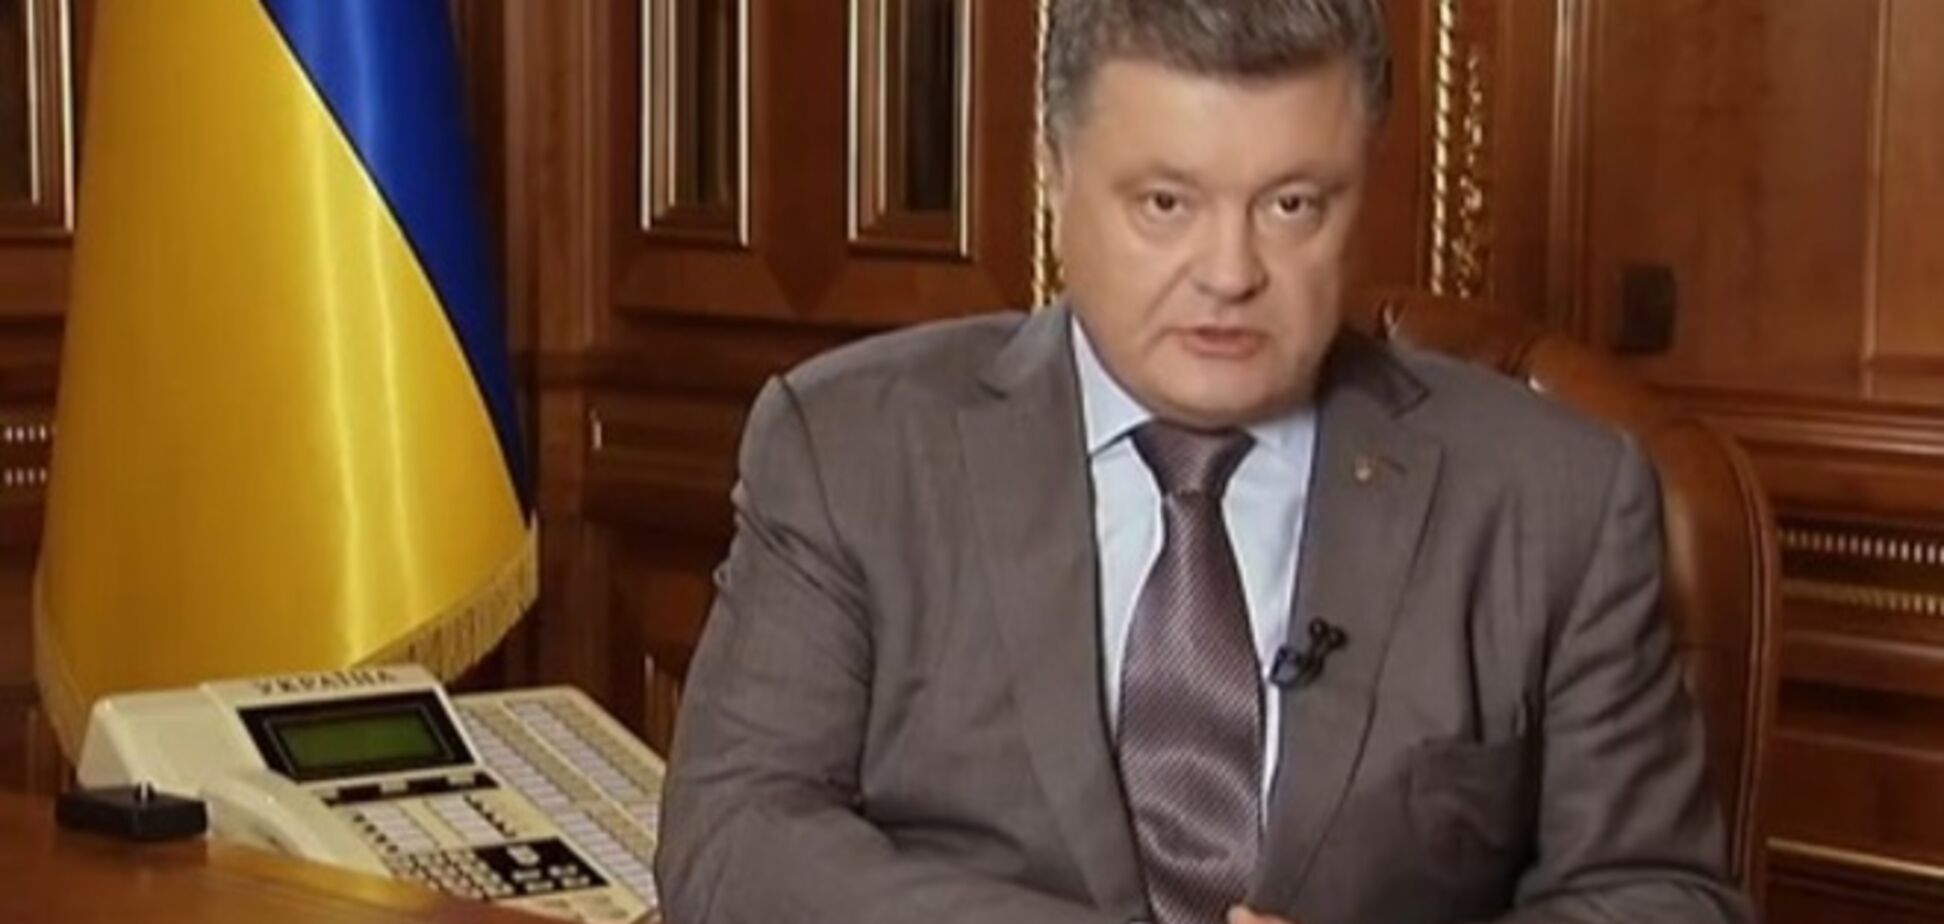 Порошенко призвал депутатов проголосовать за законы Яценюка